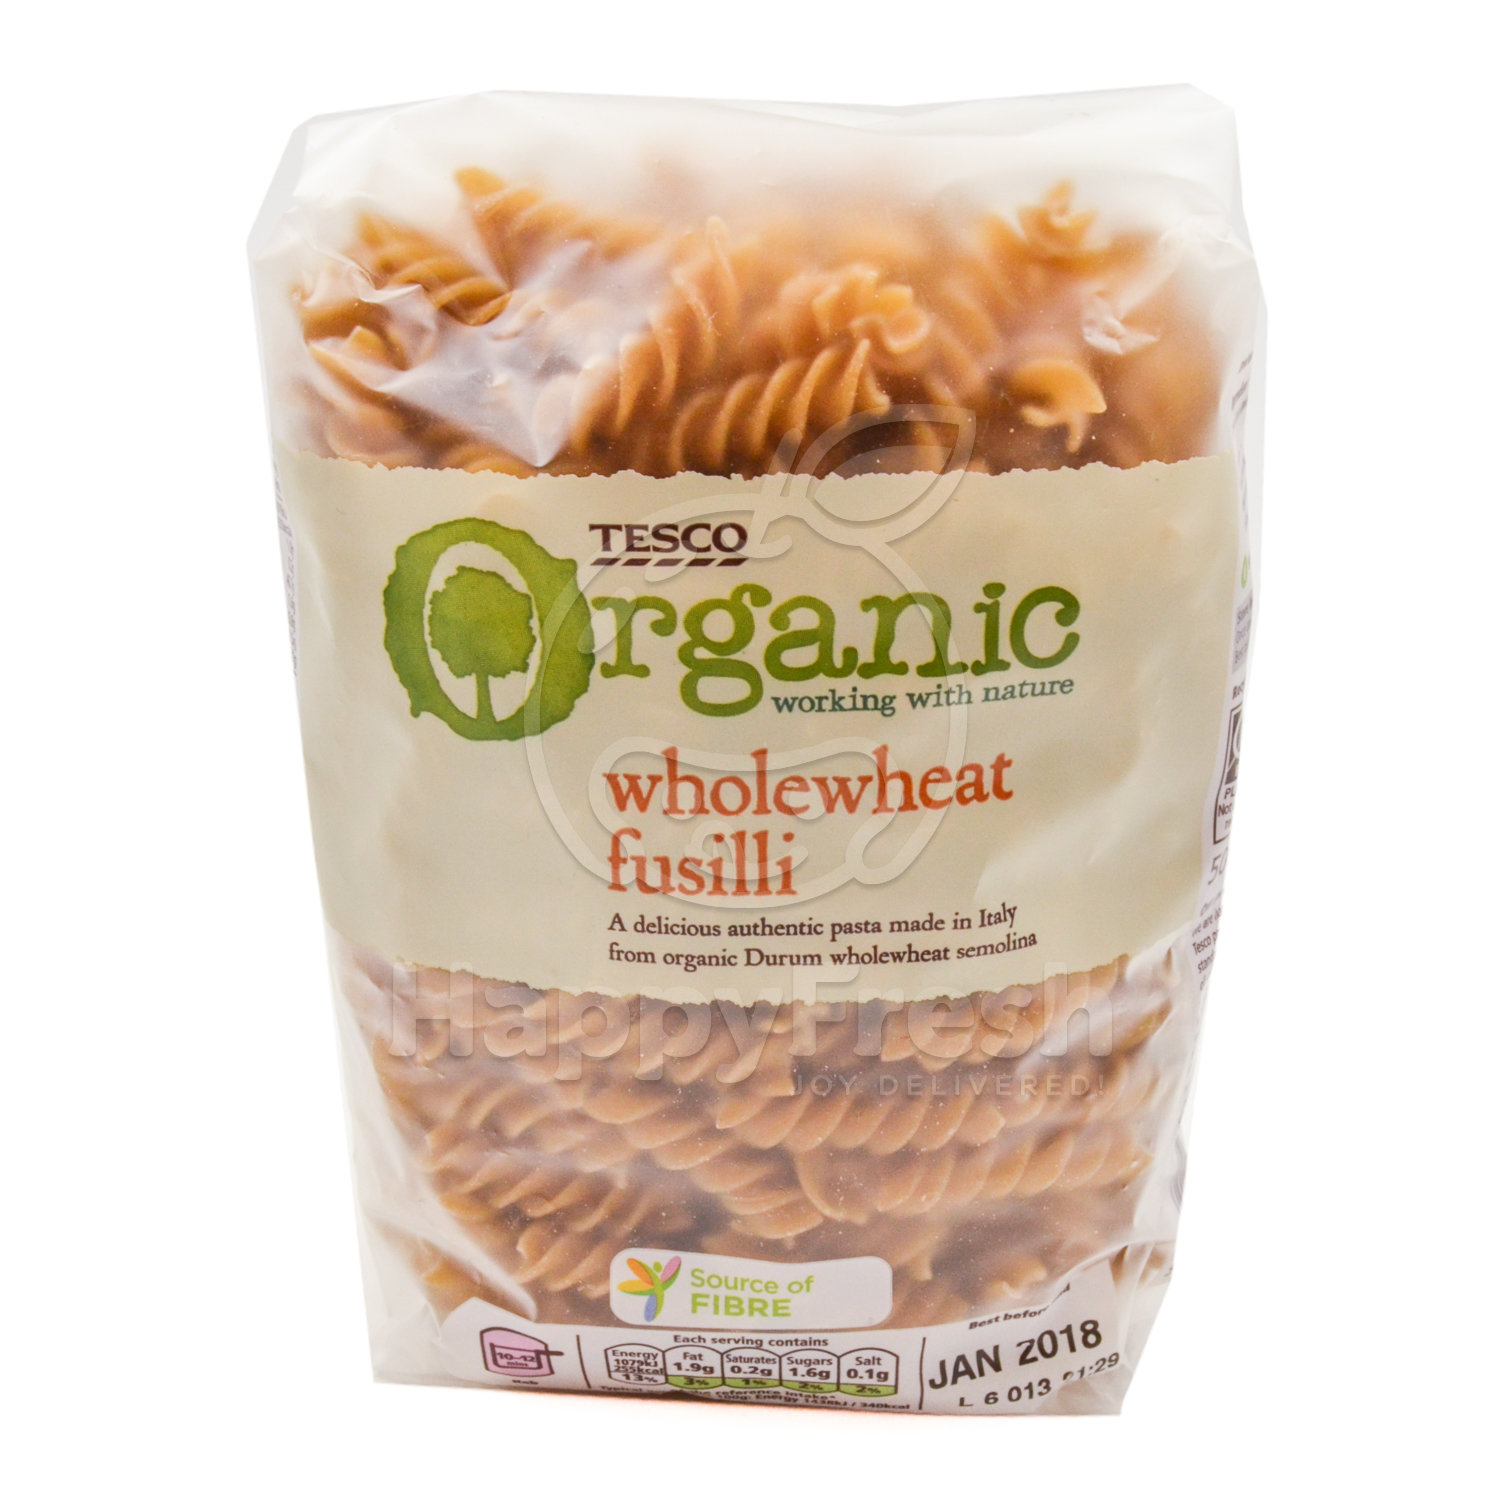 Tesco Organic Wholewheat Fusilli Pasta Happyfresh